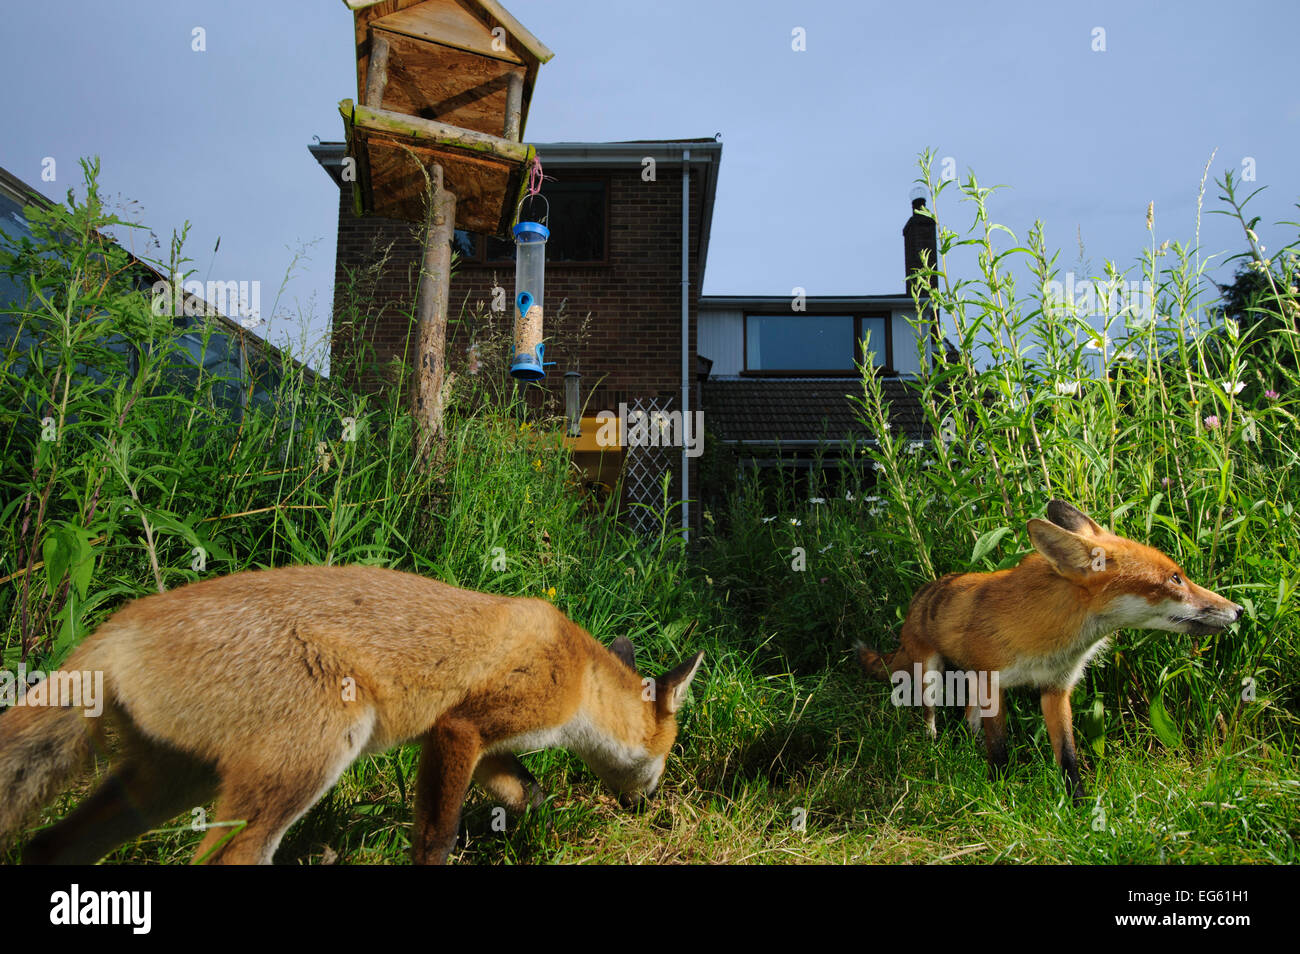 Le renard roux (Vulpes vulpes) en quête de town house garden gérés pour la faune. Vixen et cub. Kent, Royaume-Uni, juin. Piège de l'appareil photo de l'image. Parution de la propriété. Banque D'Images